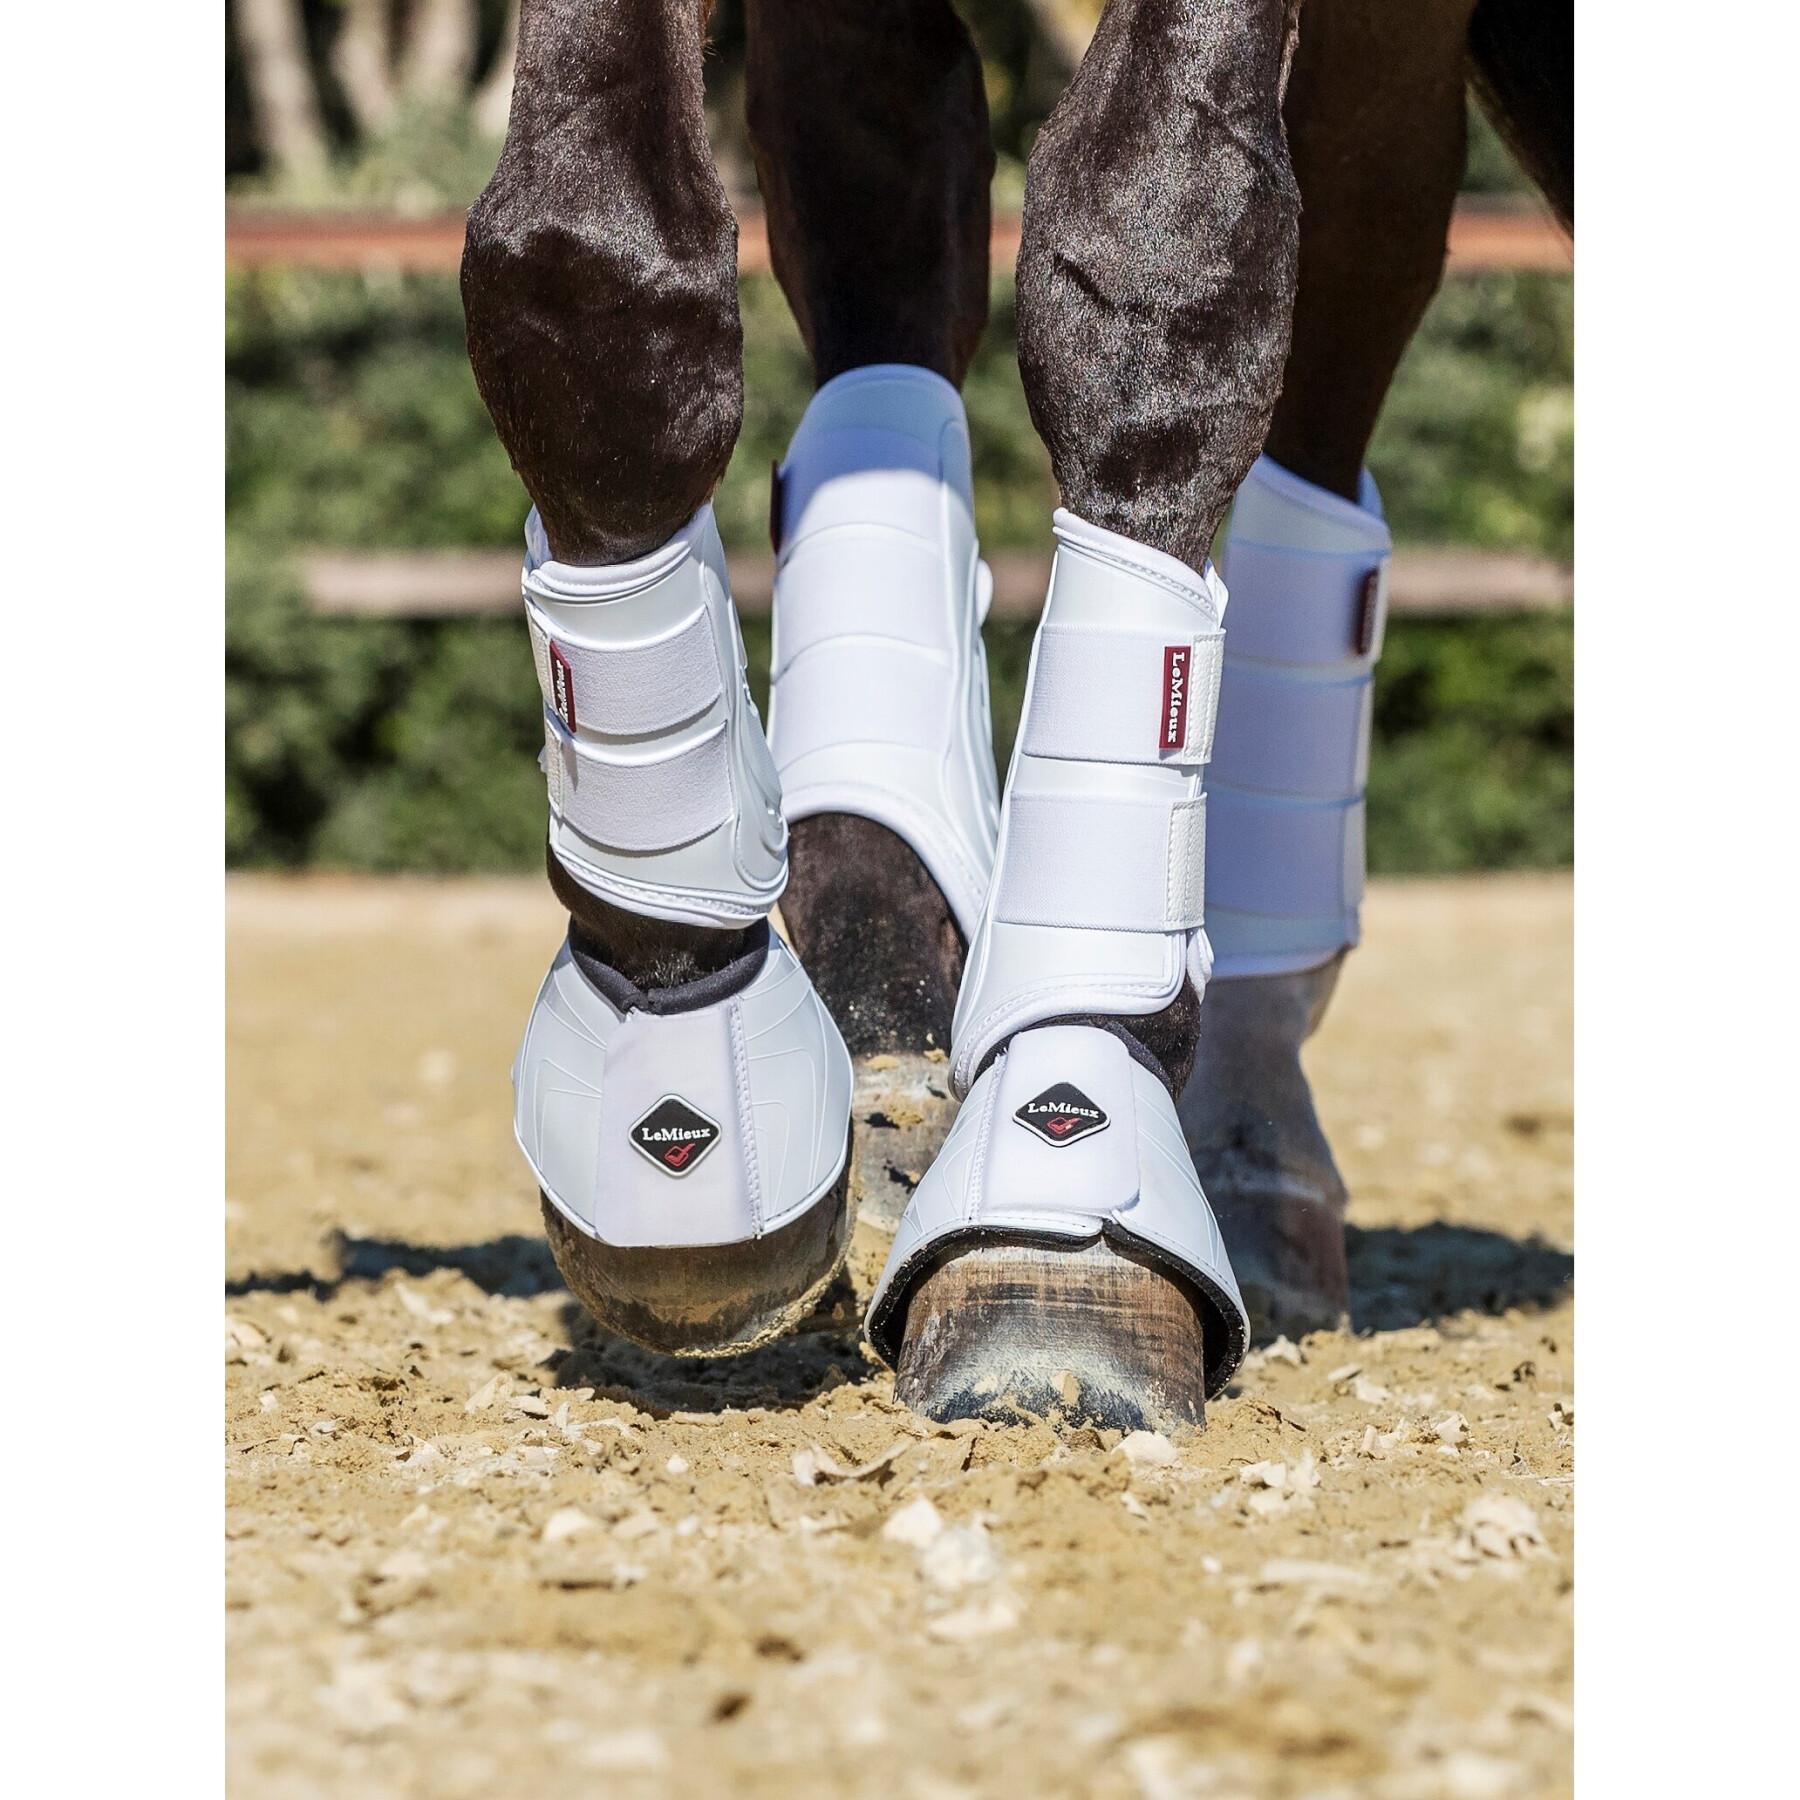 Hind leg gaiters for horses LeMieux ProShell Over Reach